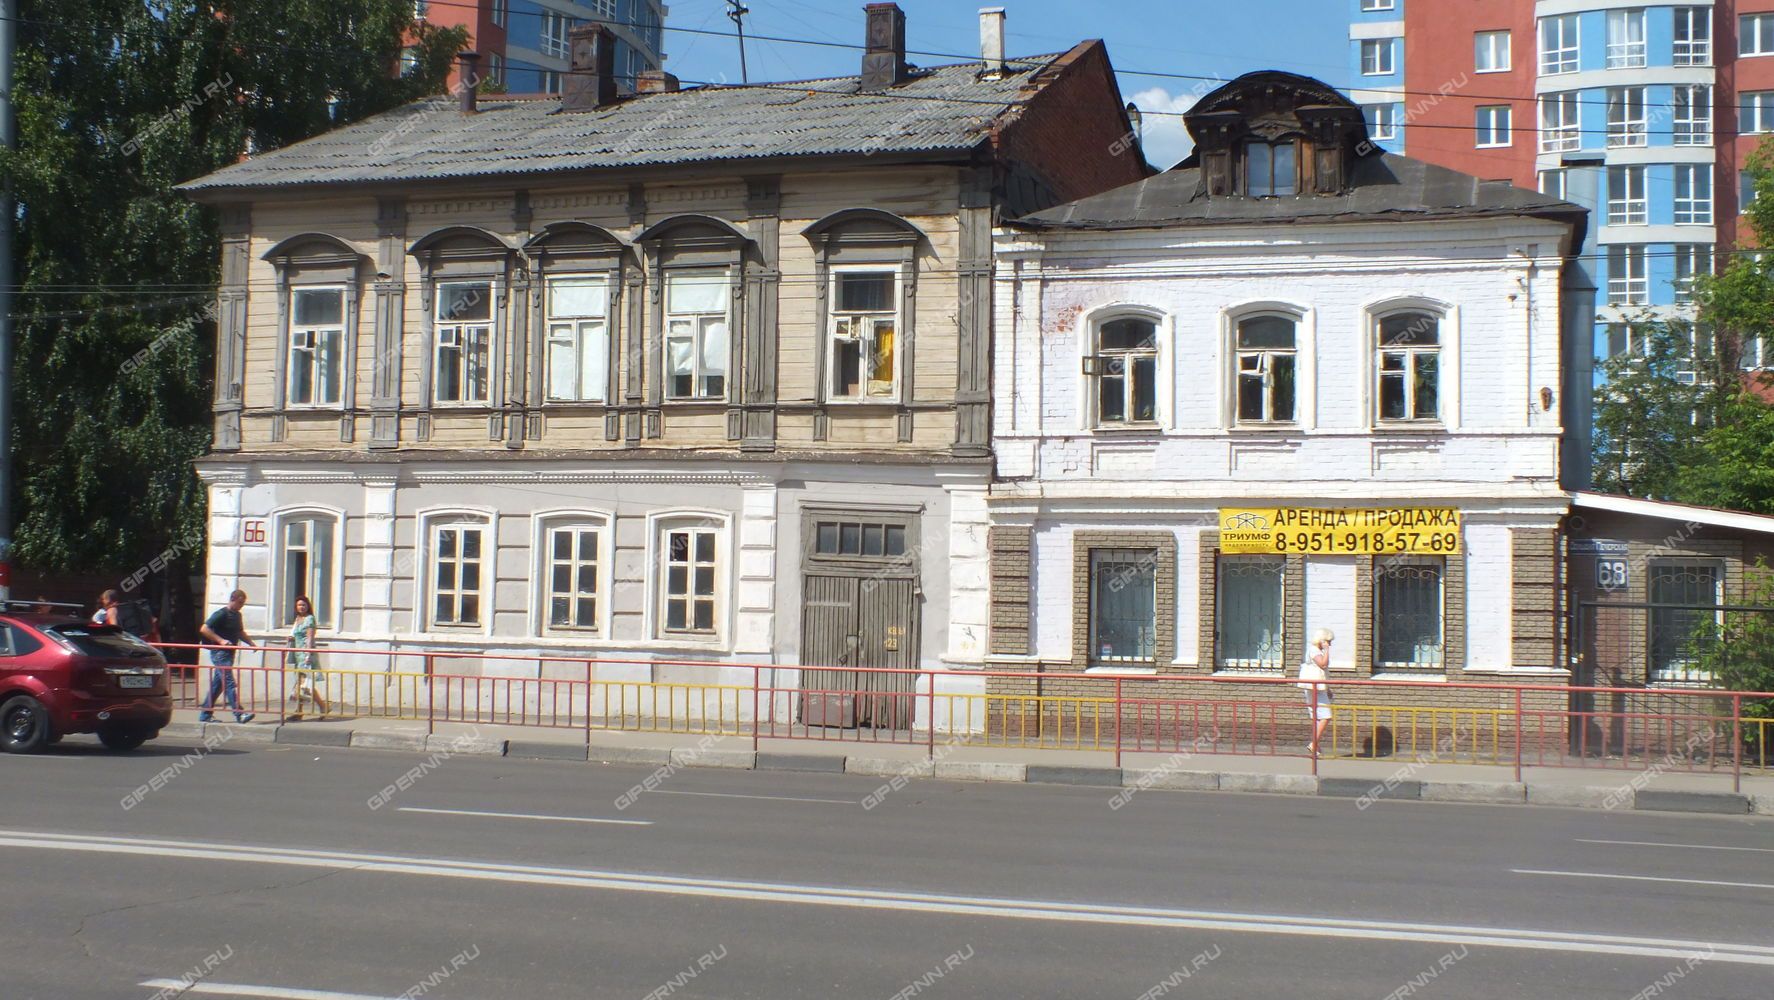 Два исторических дома могут снести из-за строительства метро в Нижнем Новгороде  - фото 1